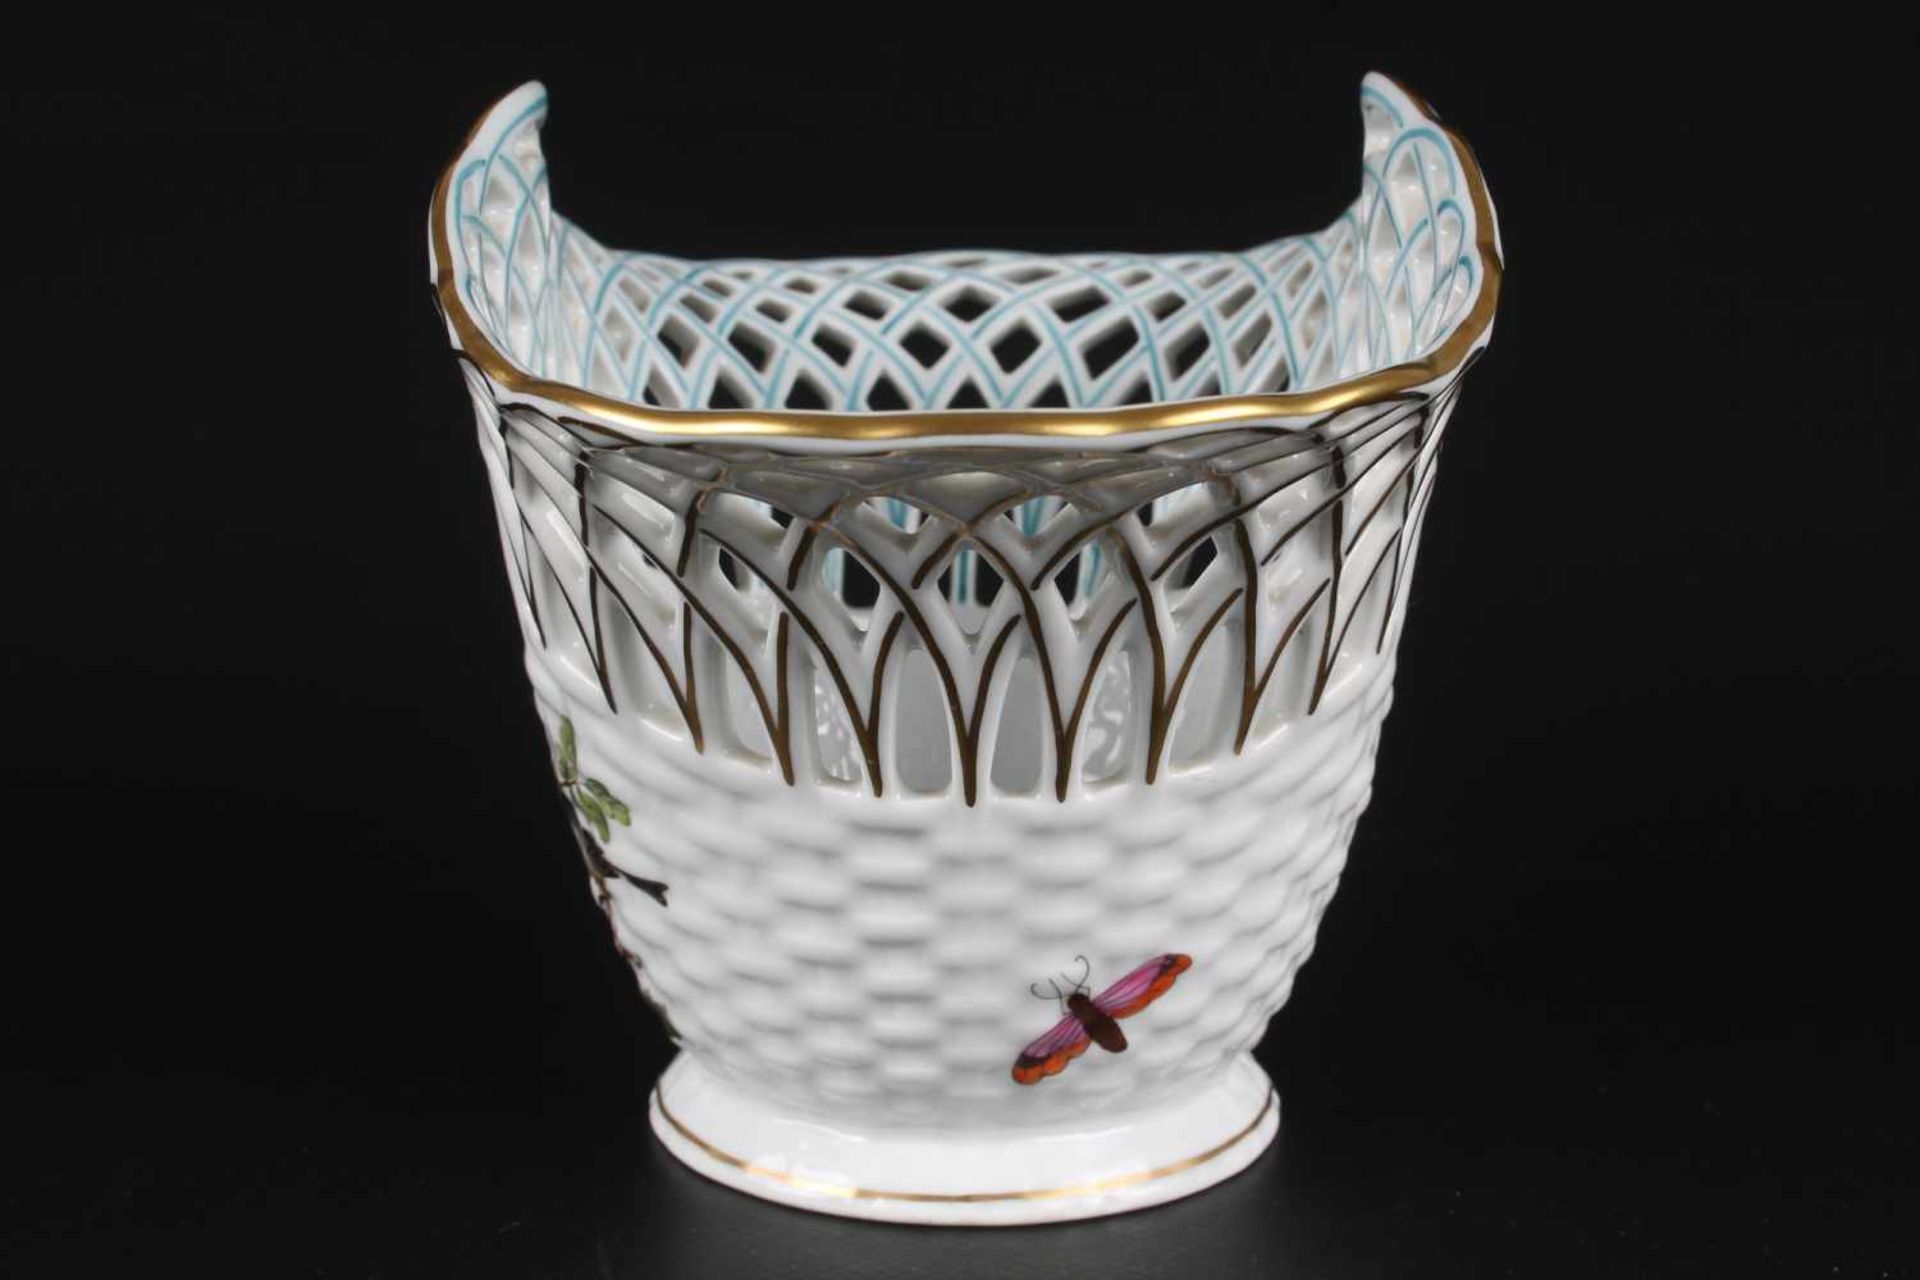 Herend Rothschild Schale bowl,Porzellan, Ungarn 20. Jahrhundert, Dekor Rothschild, Durchbrucharbeit, - Bild 3 aus 5